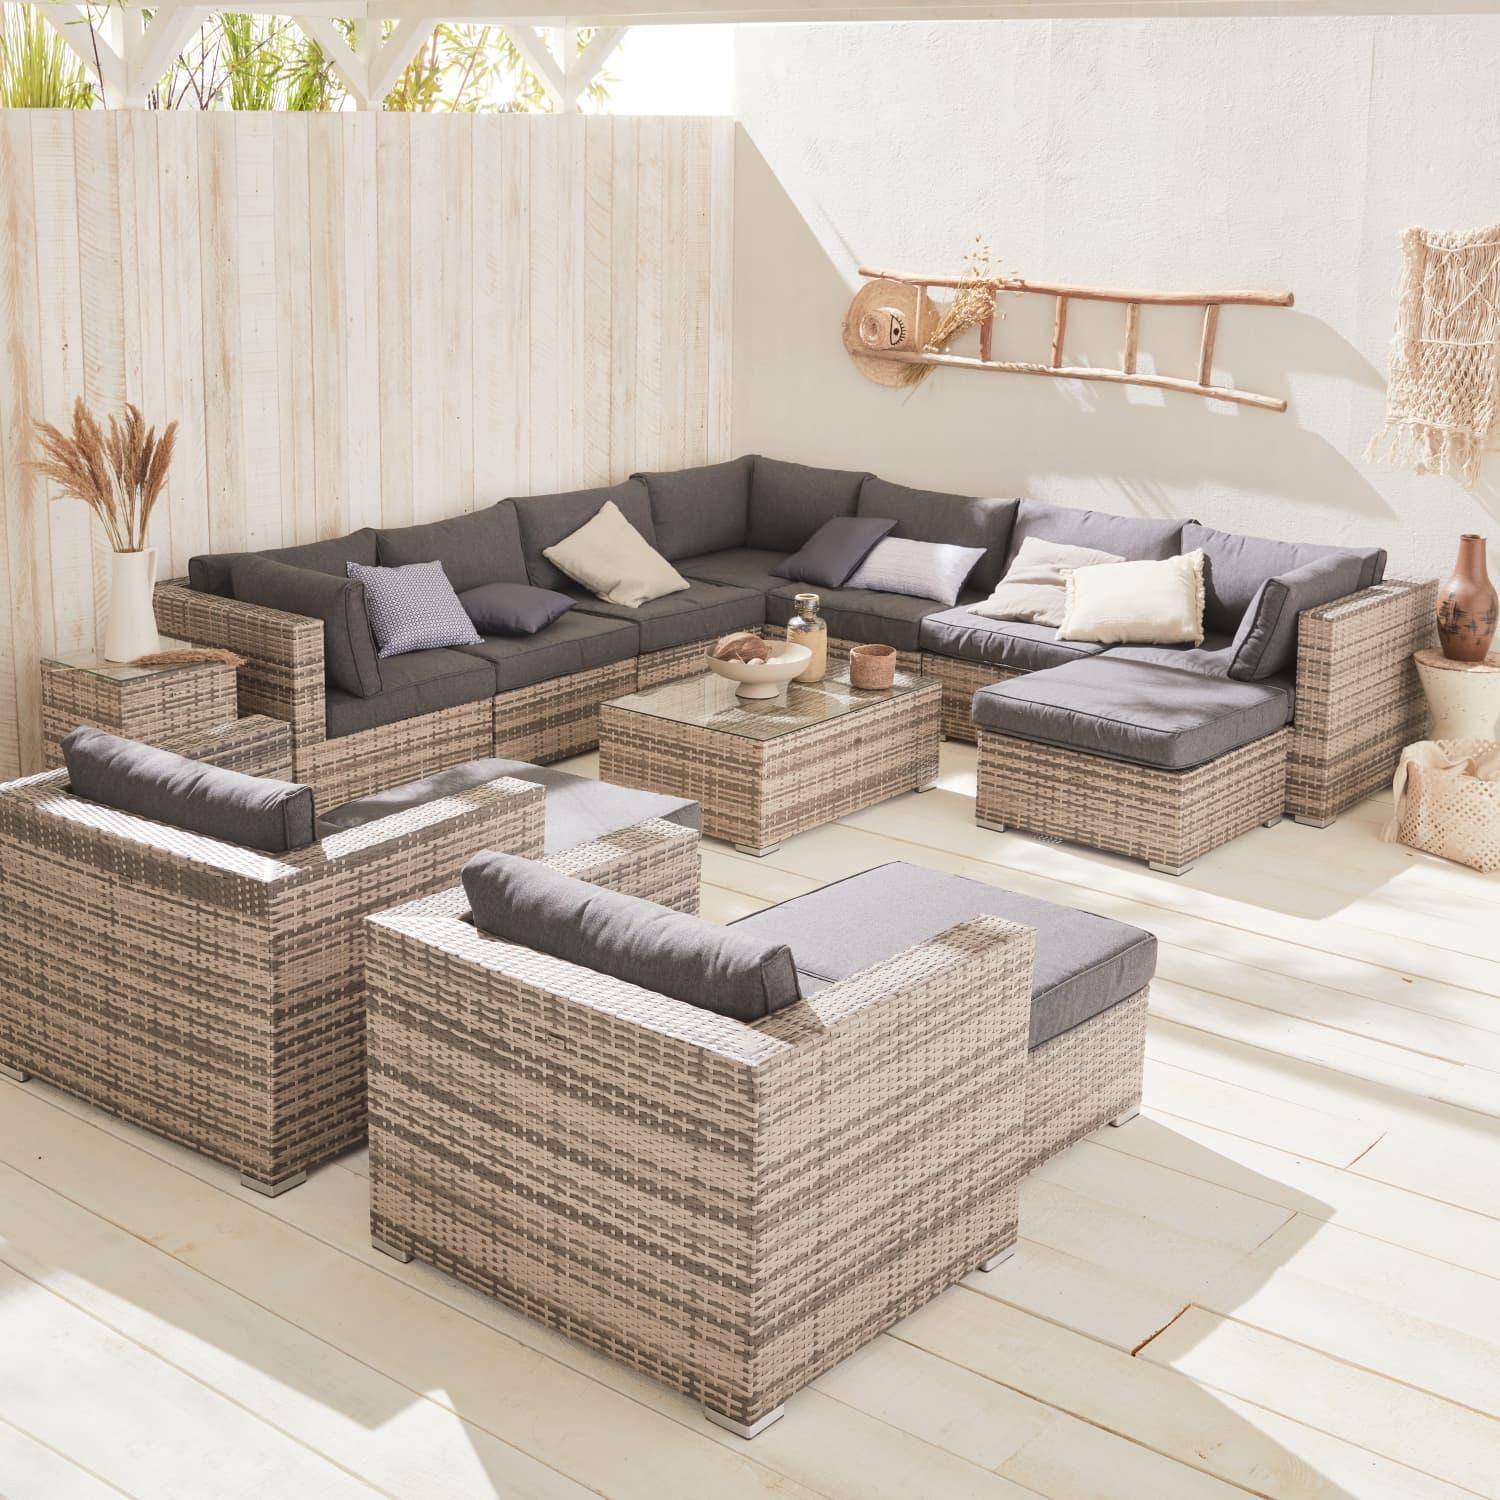 Mueble de jardin, conjunto sofa de exterior, ratan sintetico, resina trenzada - Varios tonos de gris - 12 a 14 plazas - TRIPOLI Photo1